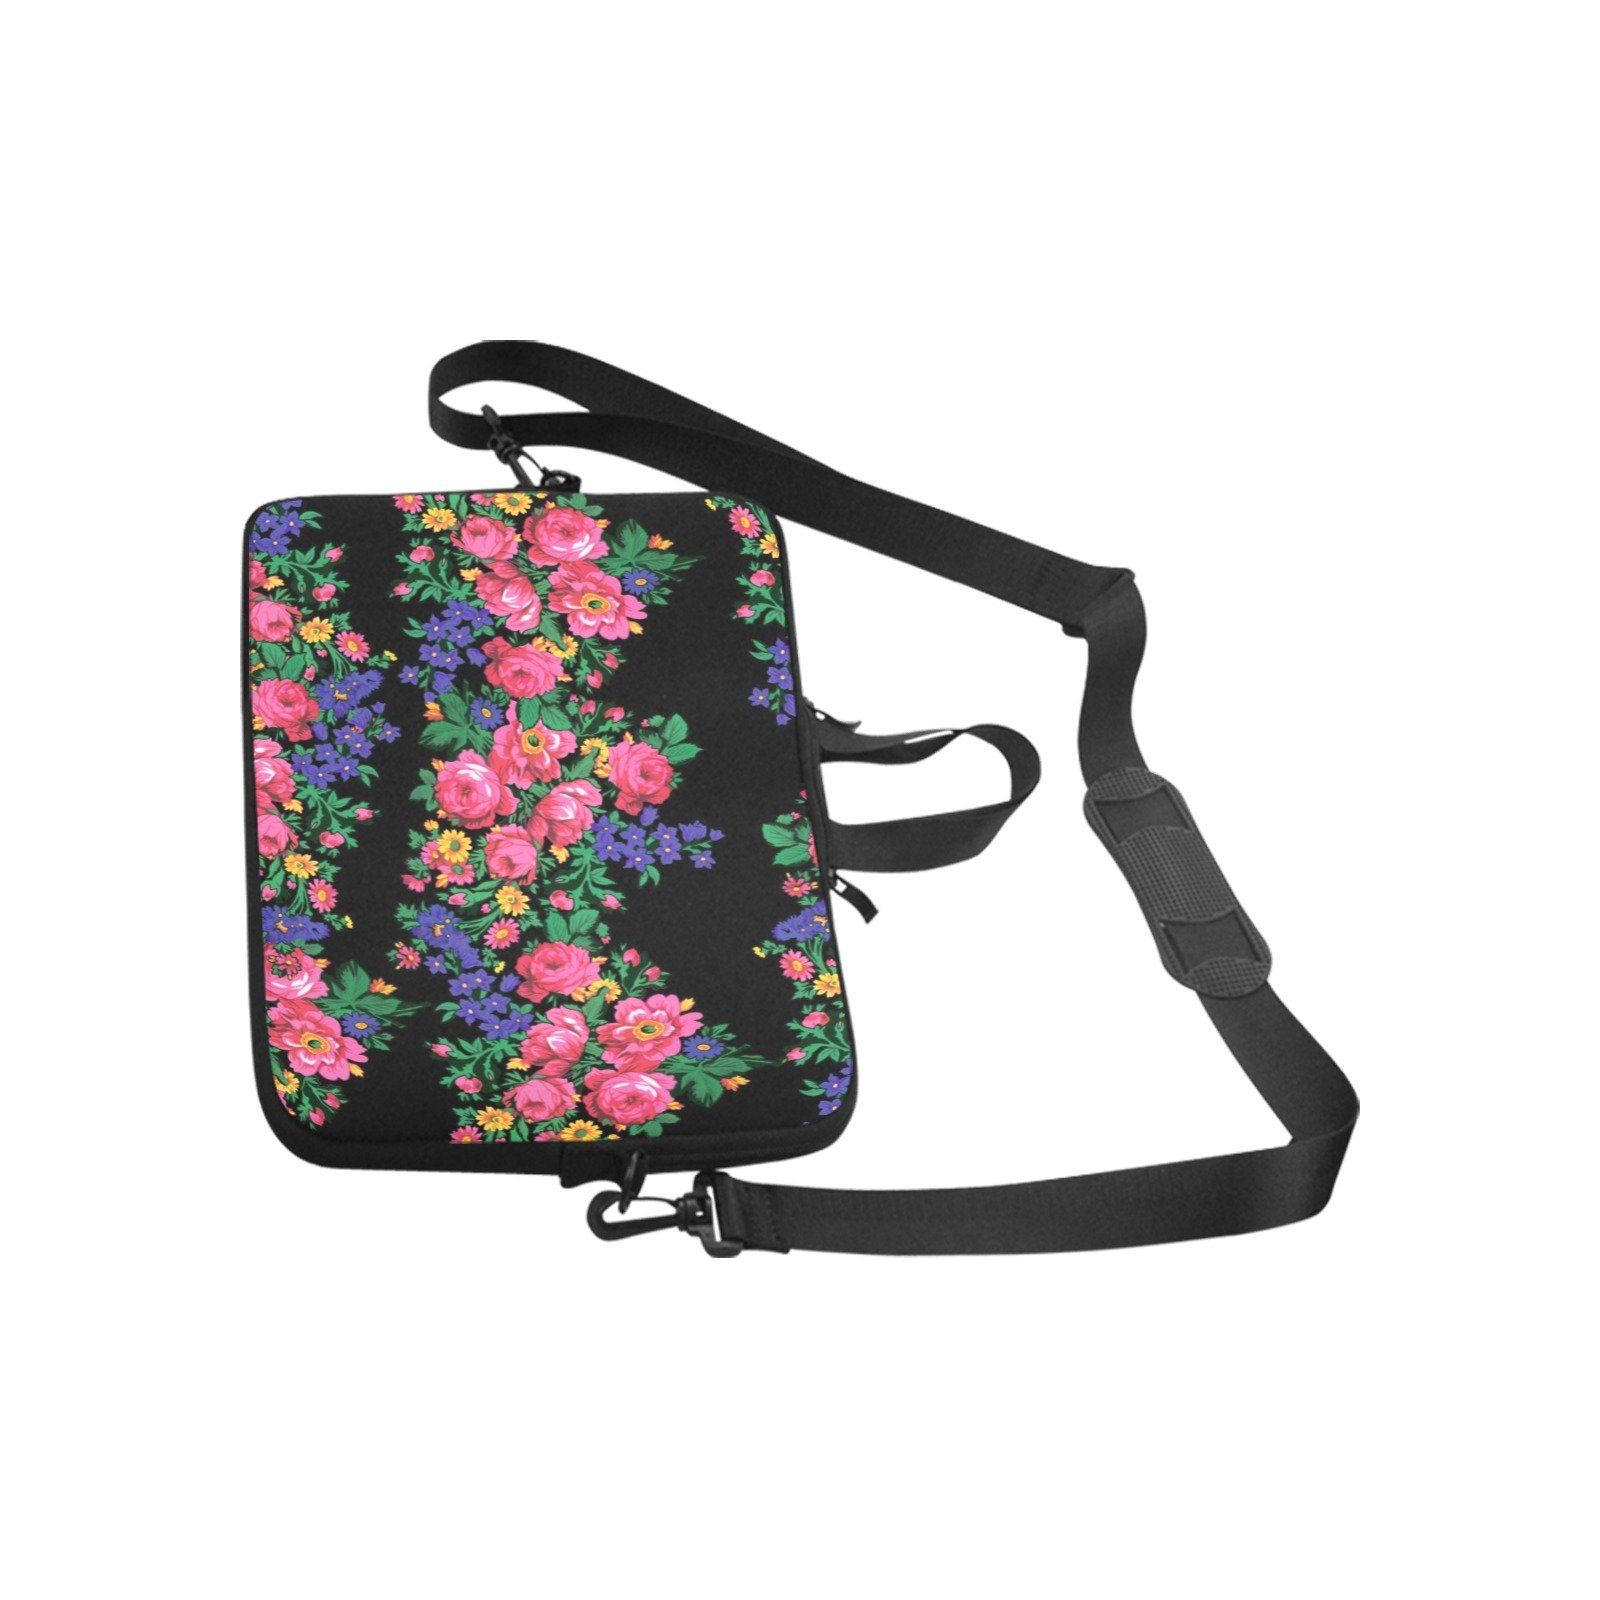 Kokum's Revenge Black Laptop Handbags 10" bag e-joyer 